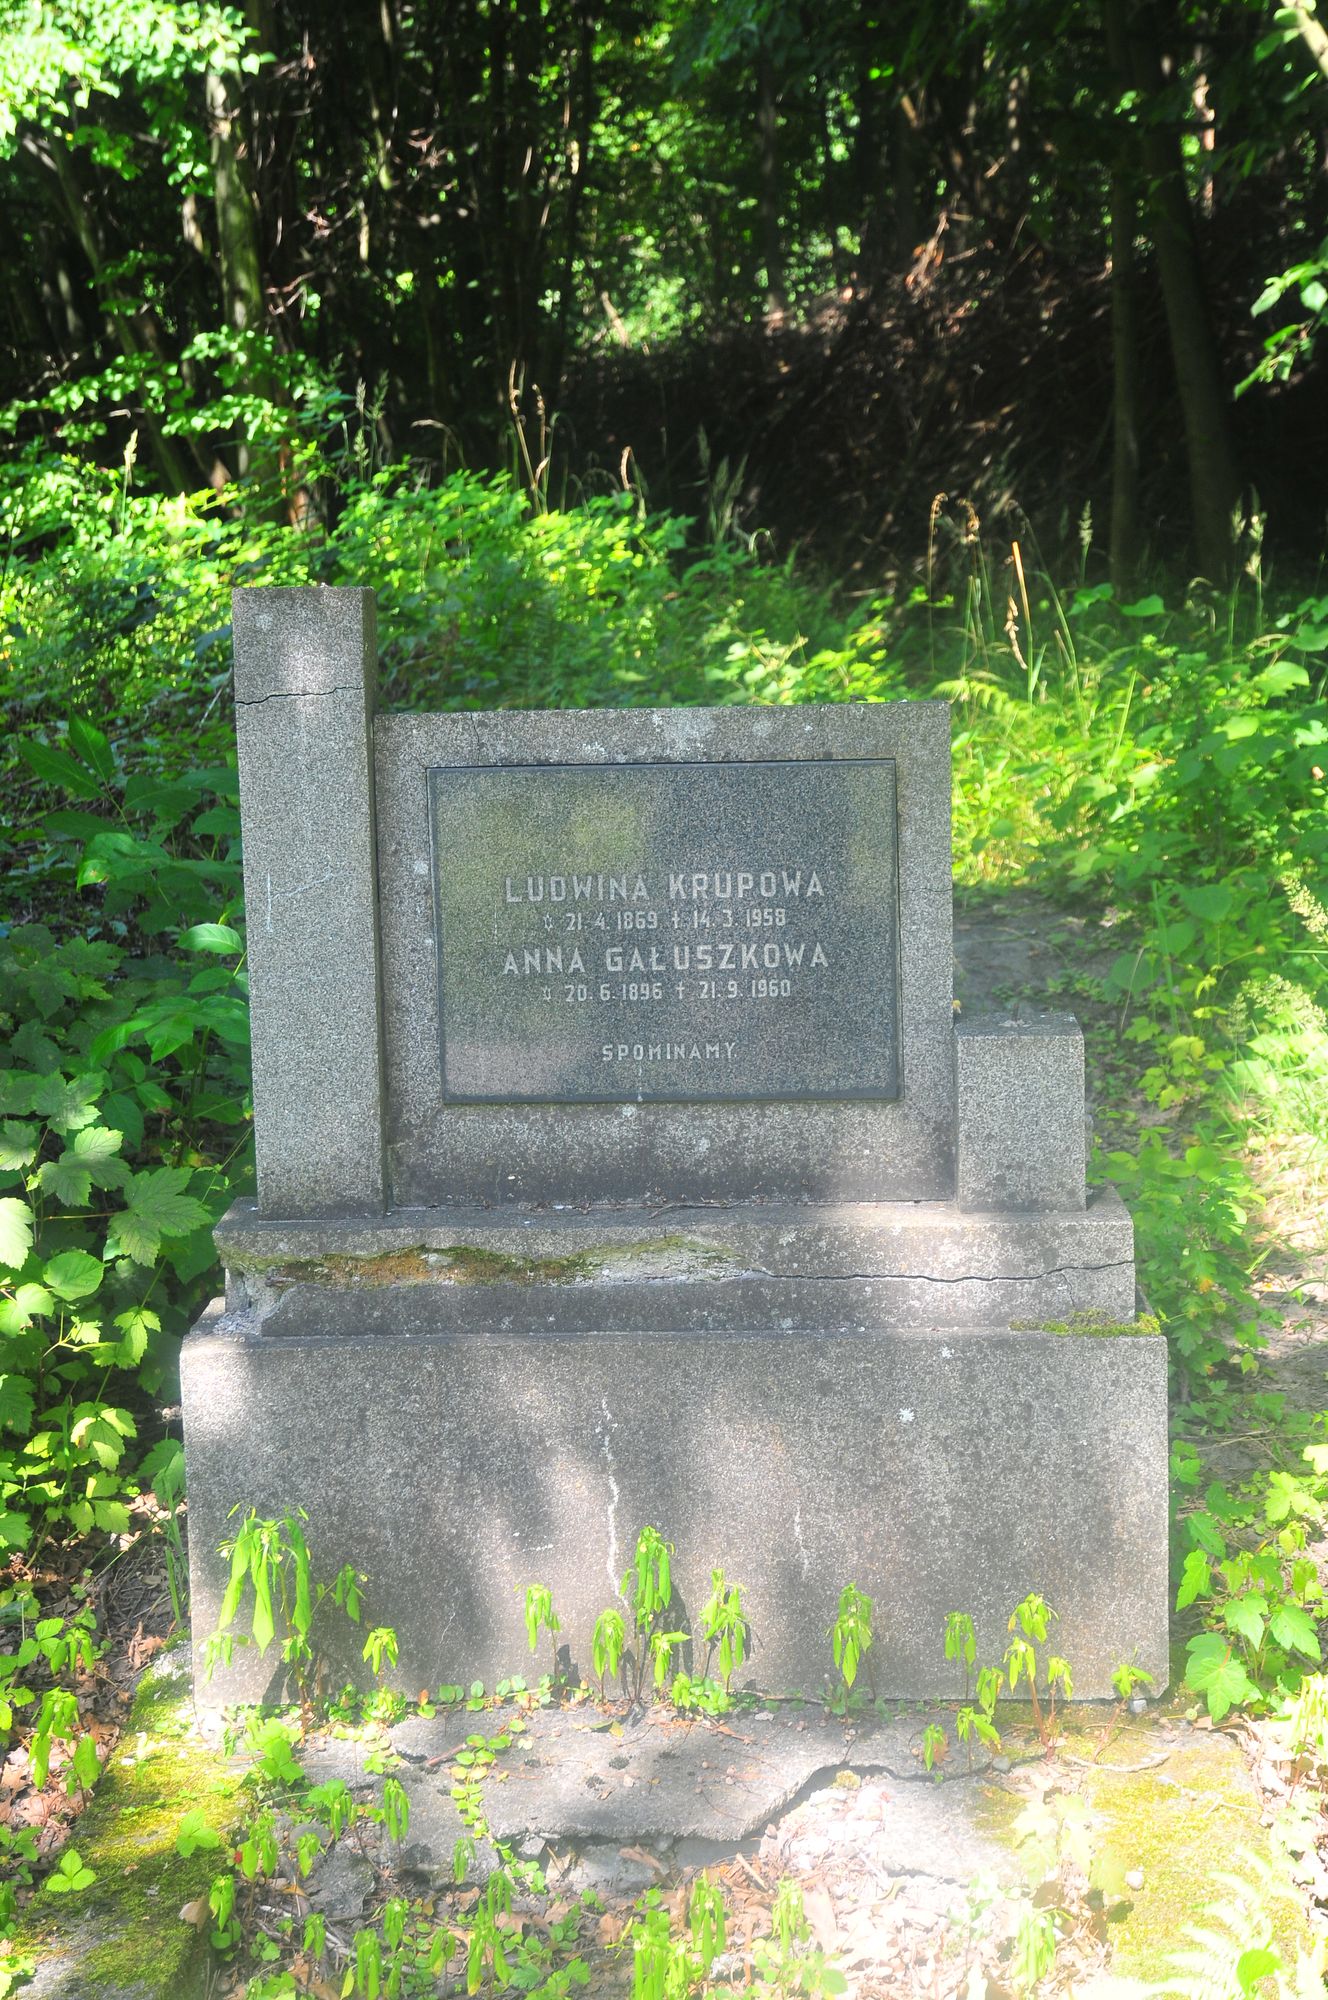 Tombstone of Ludwina Krupowa, and Anna Galuszkowa